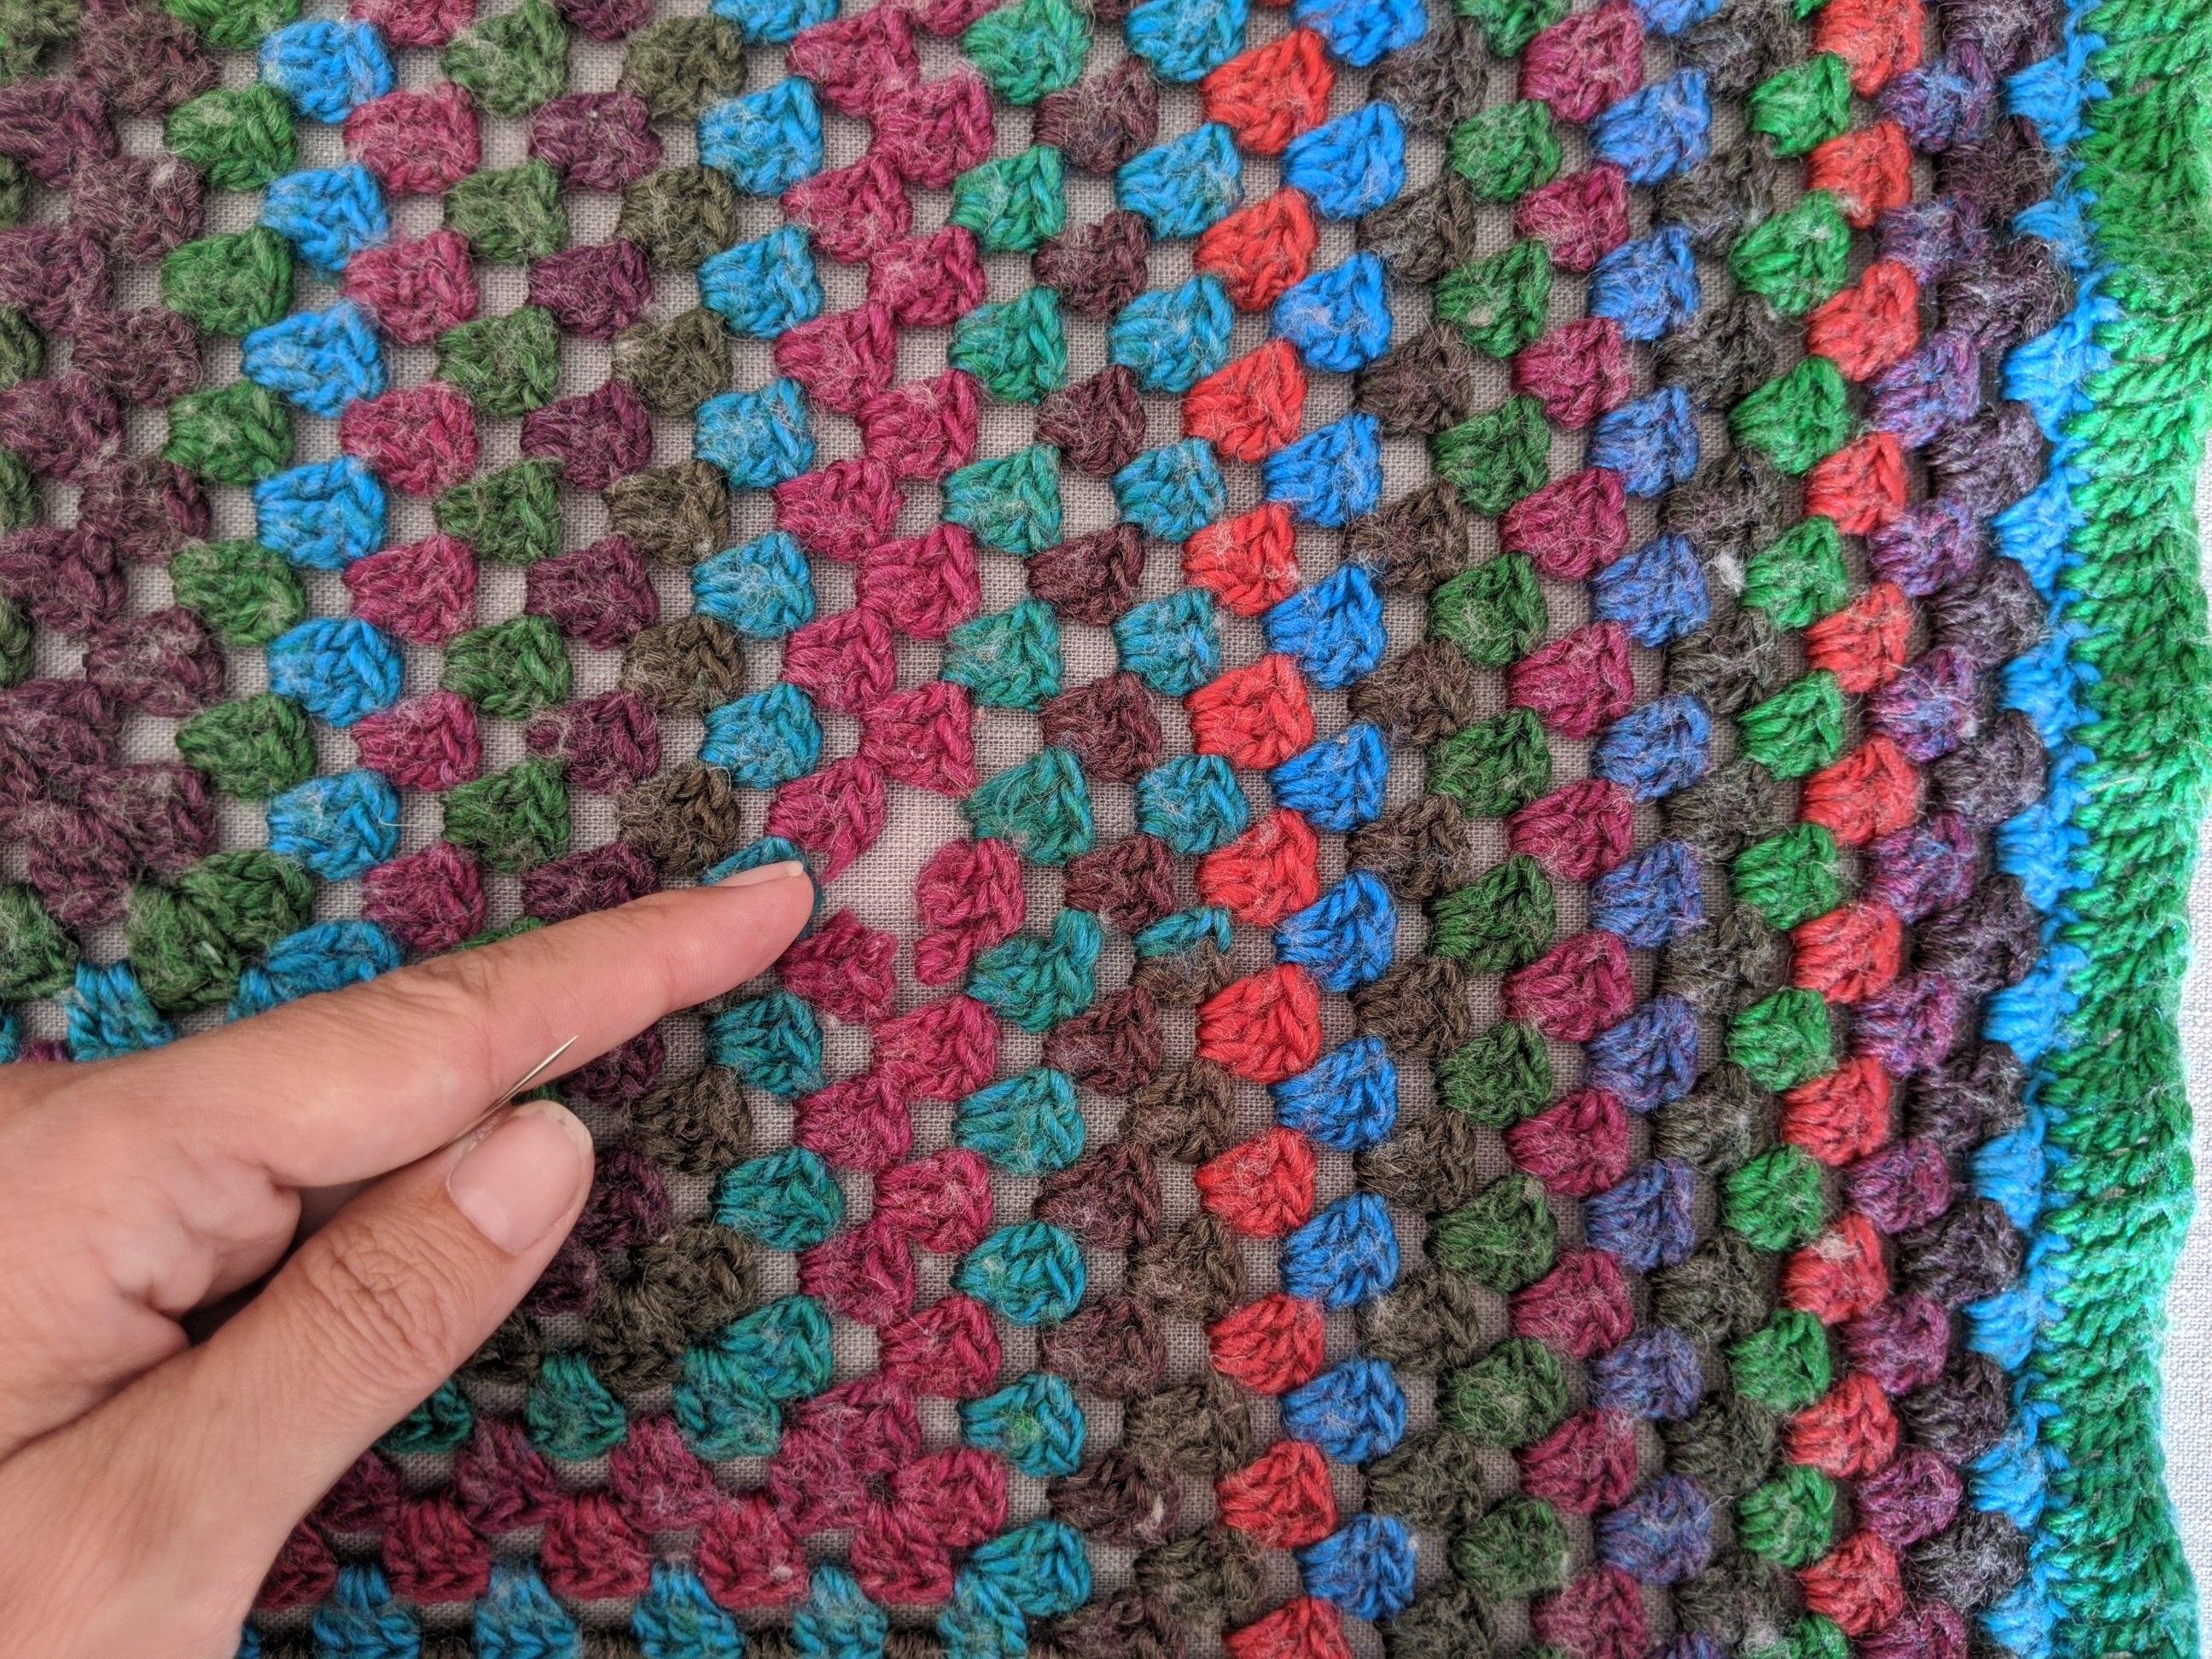 Mending frayed crochet